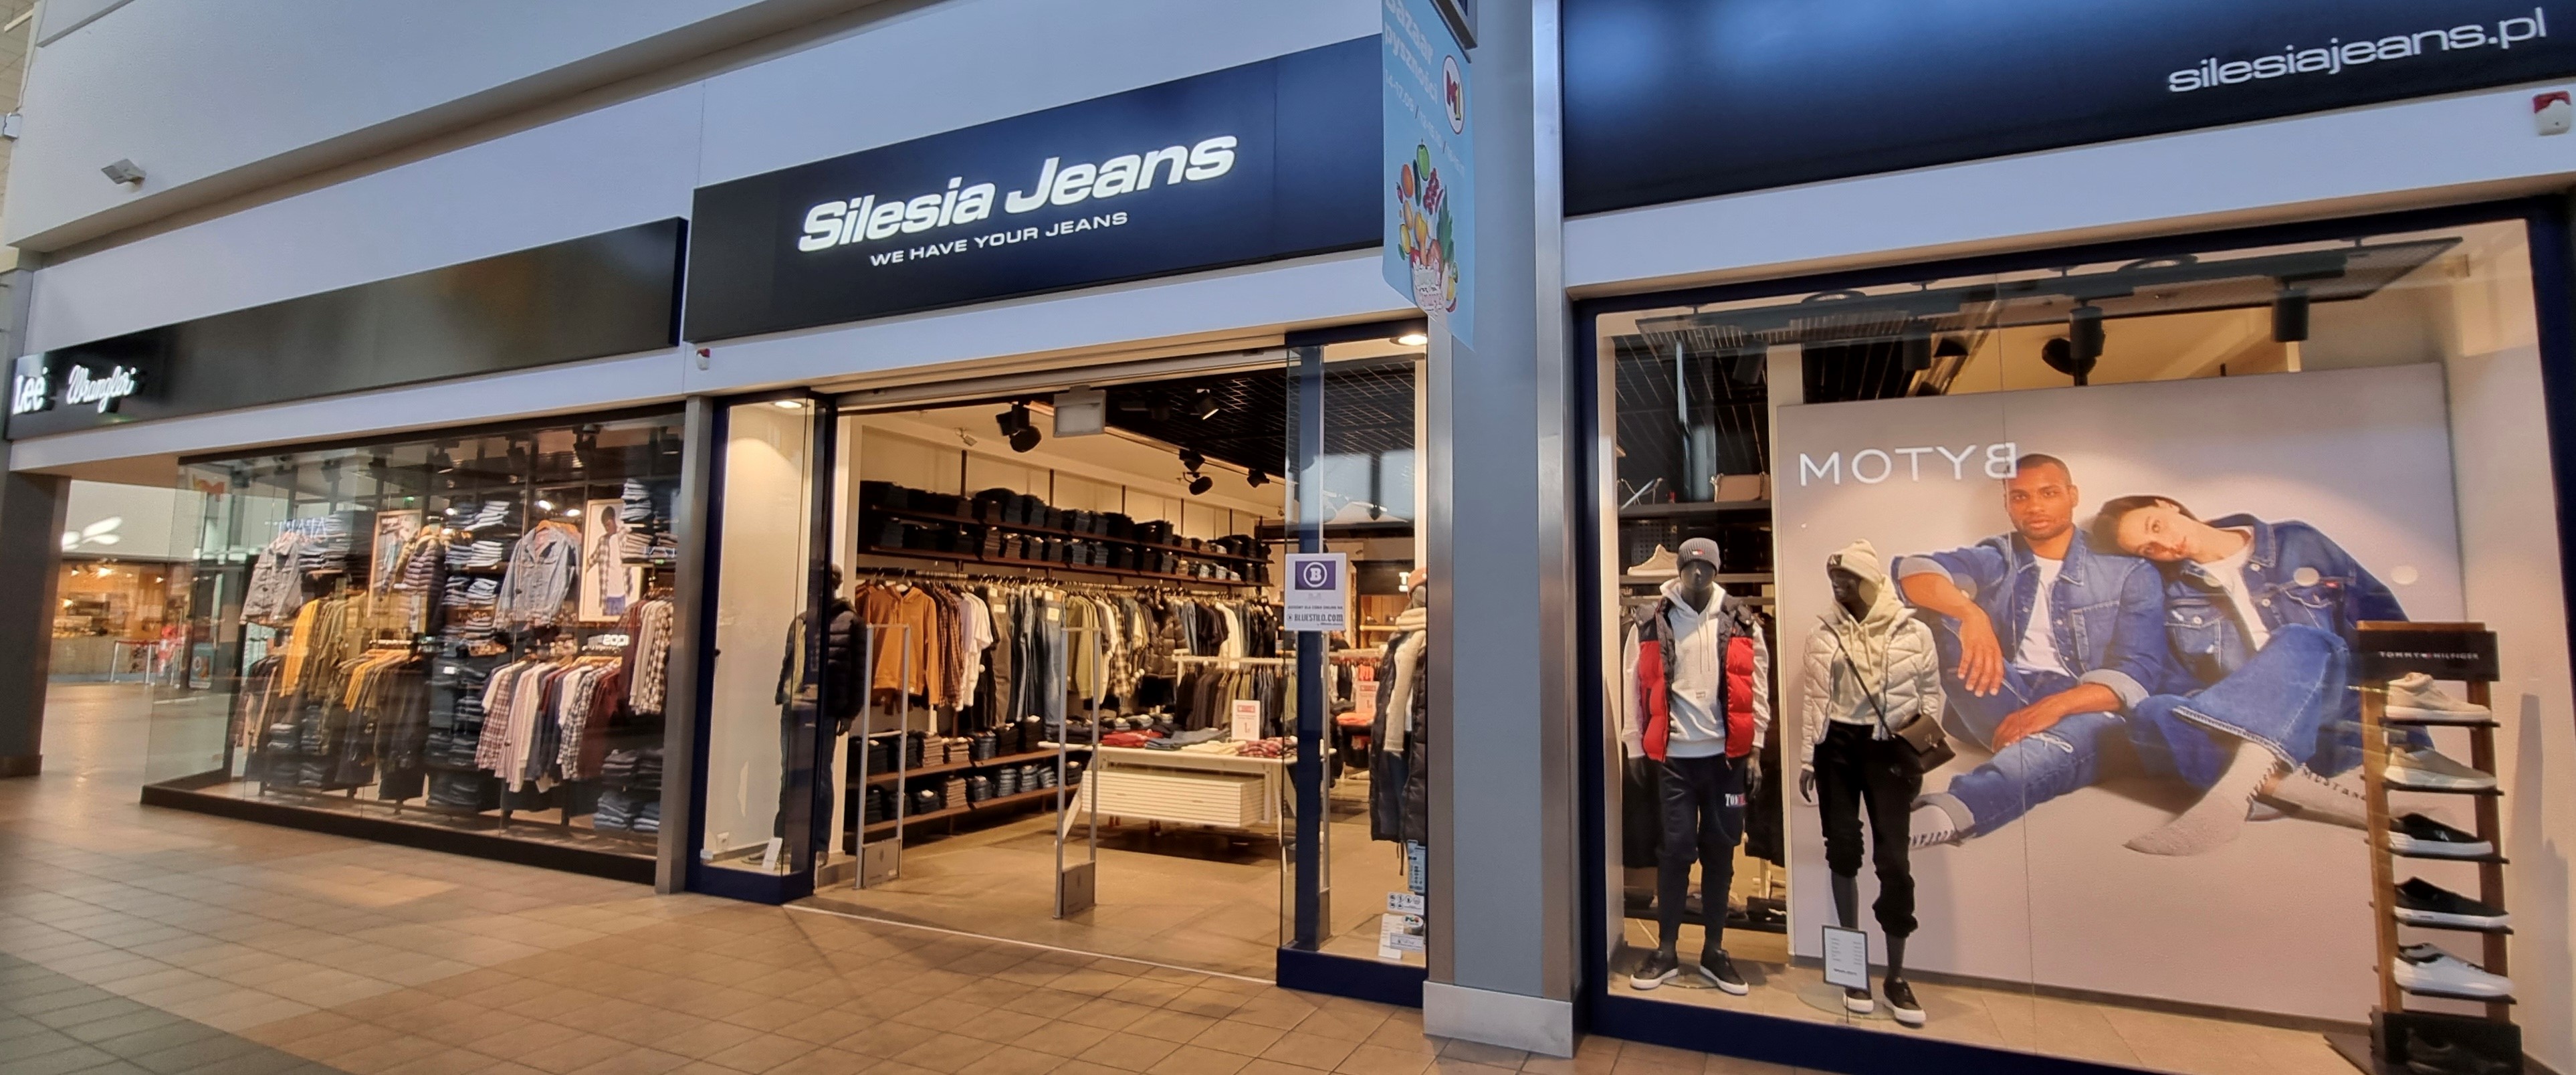 Silesia Jeans